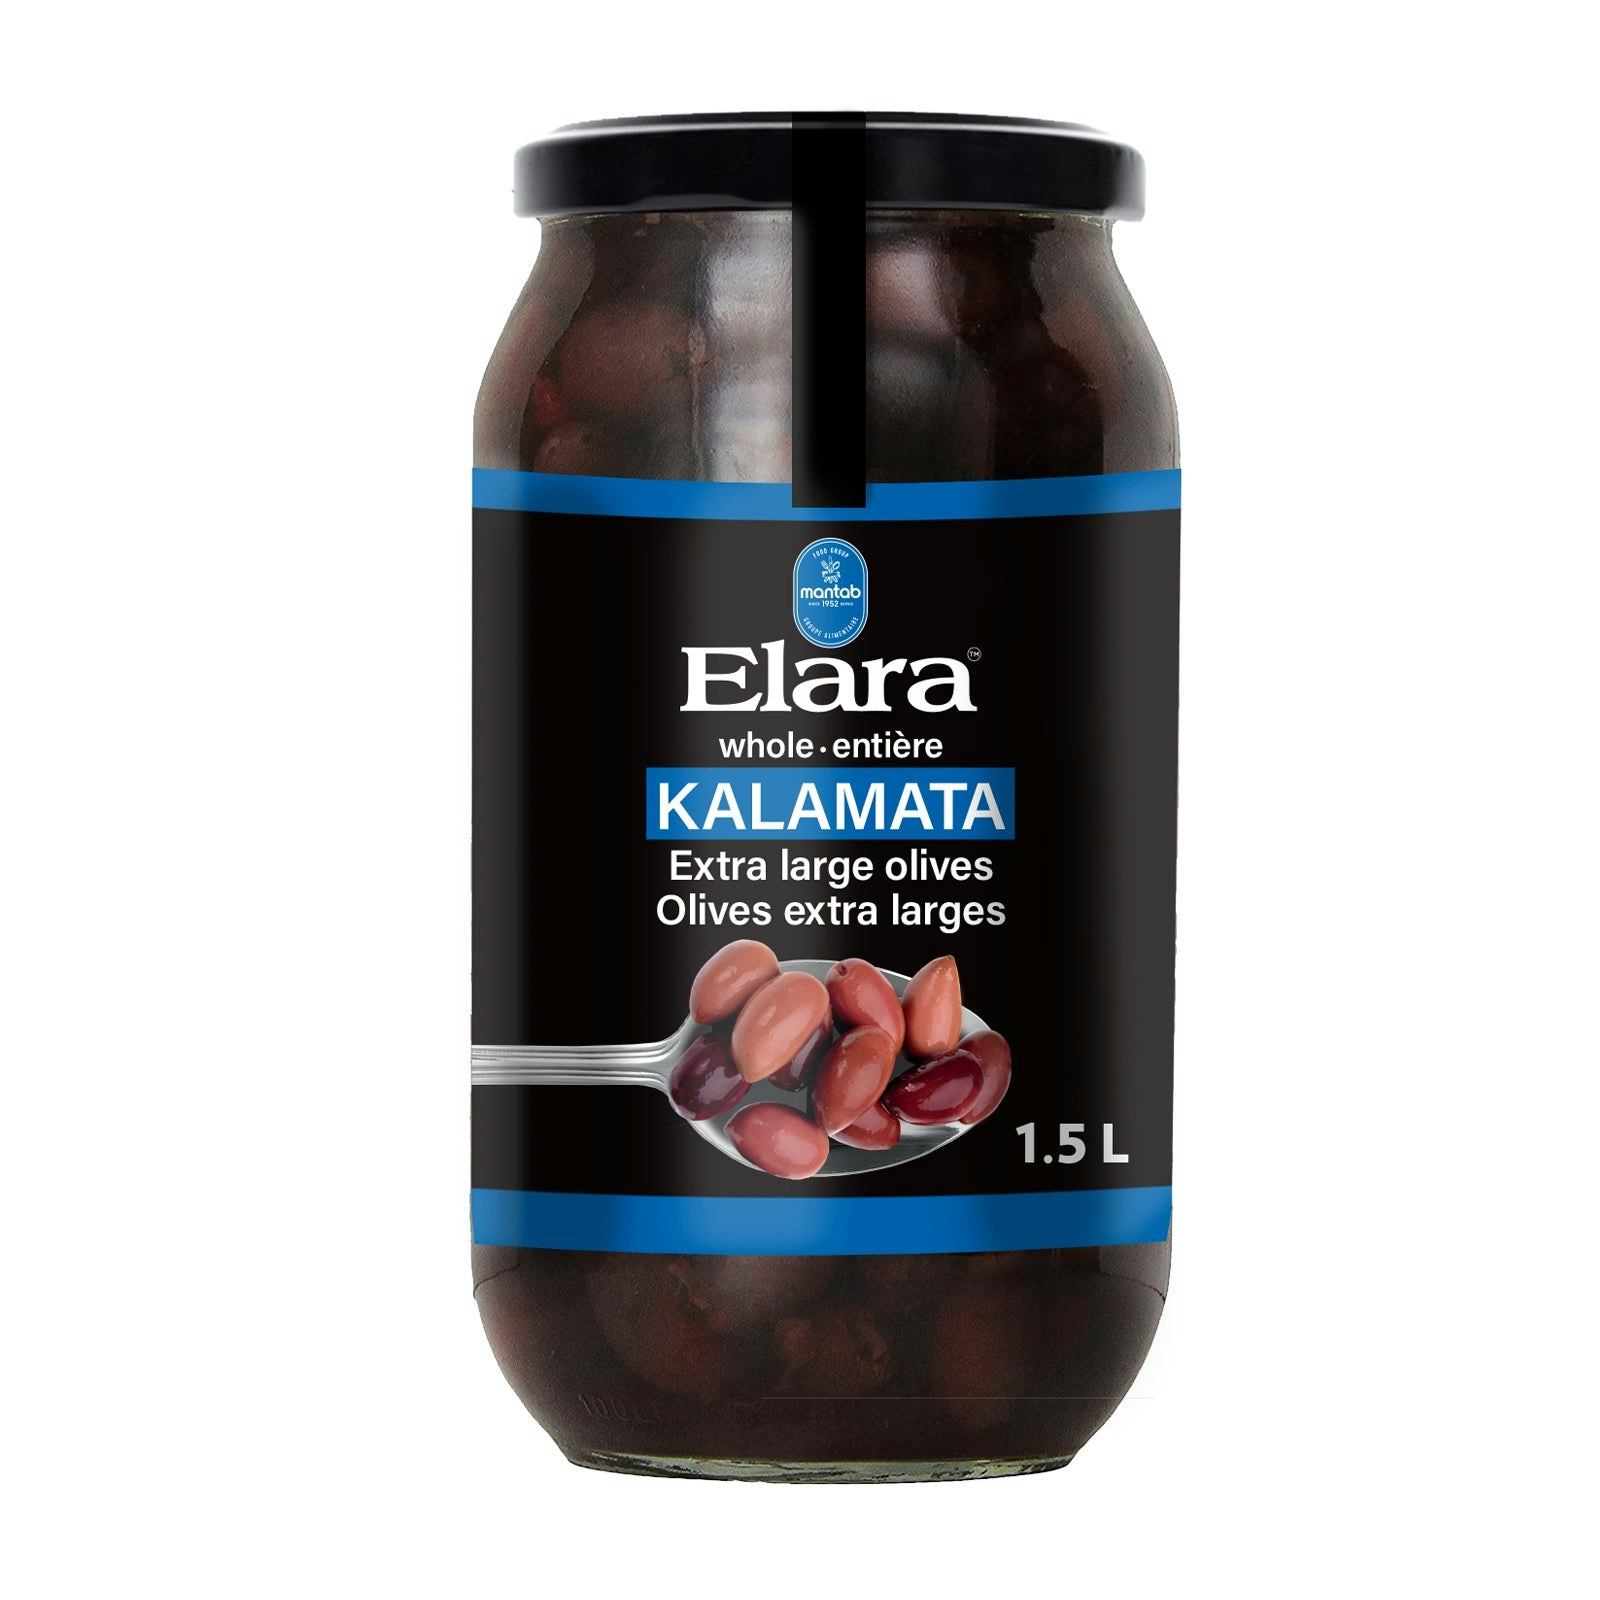 ELARA Kalamata whole extra large olives